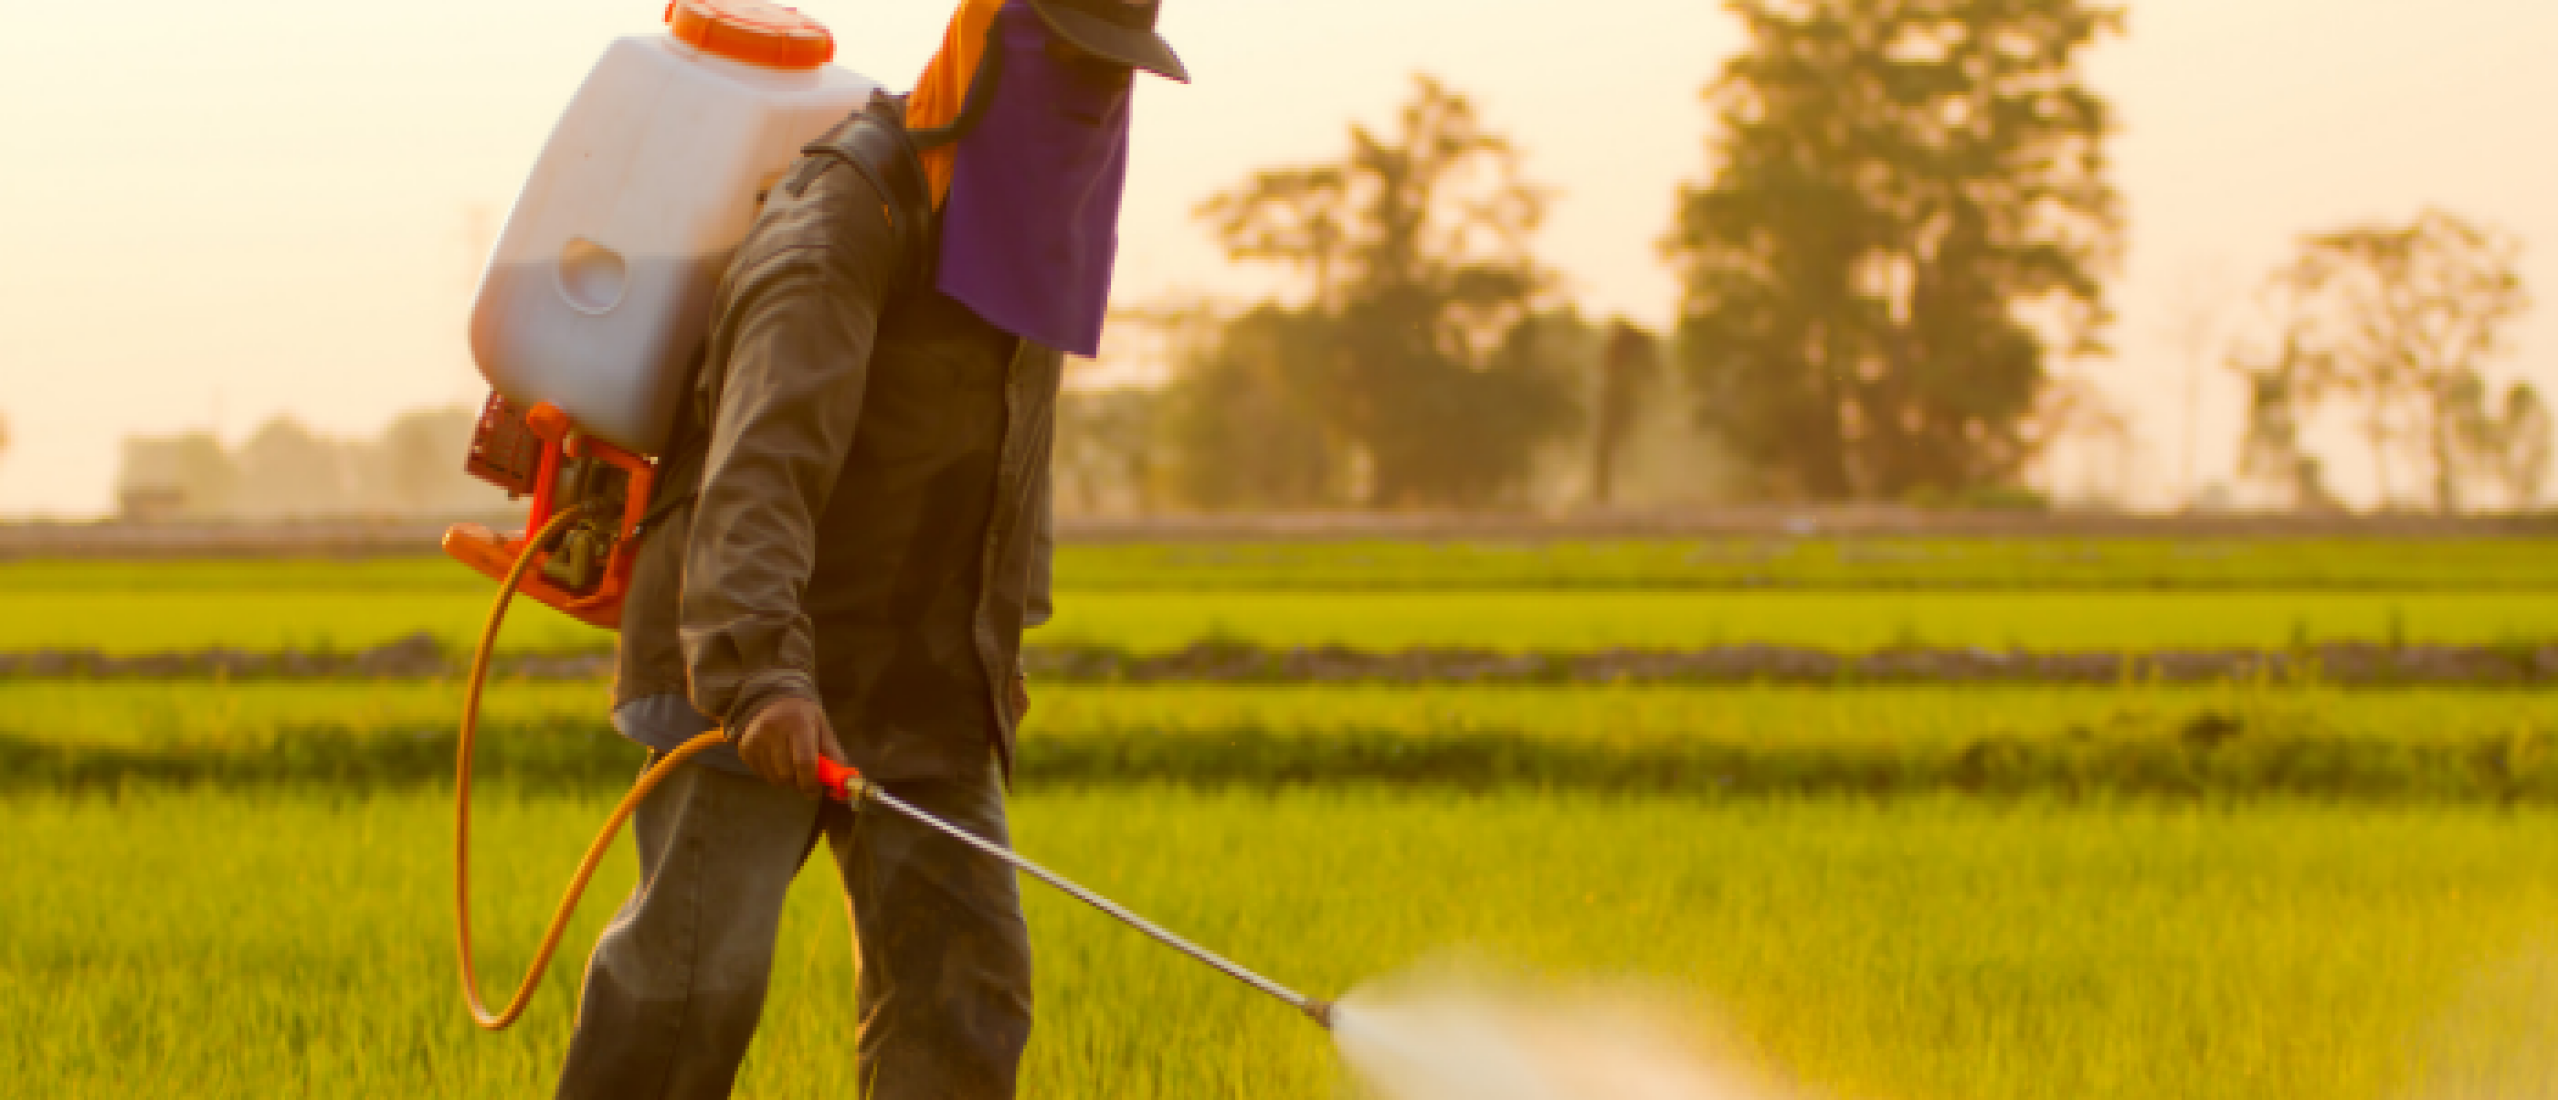 Glutenintolerantie of pesticide vervuiling? Over onkruidverdelger glyfosaat